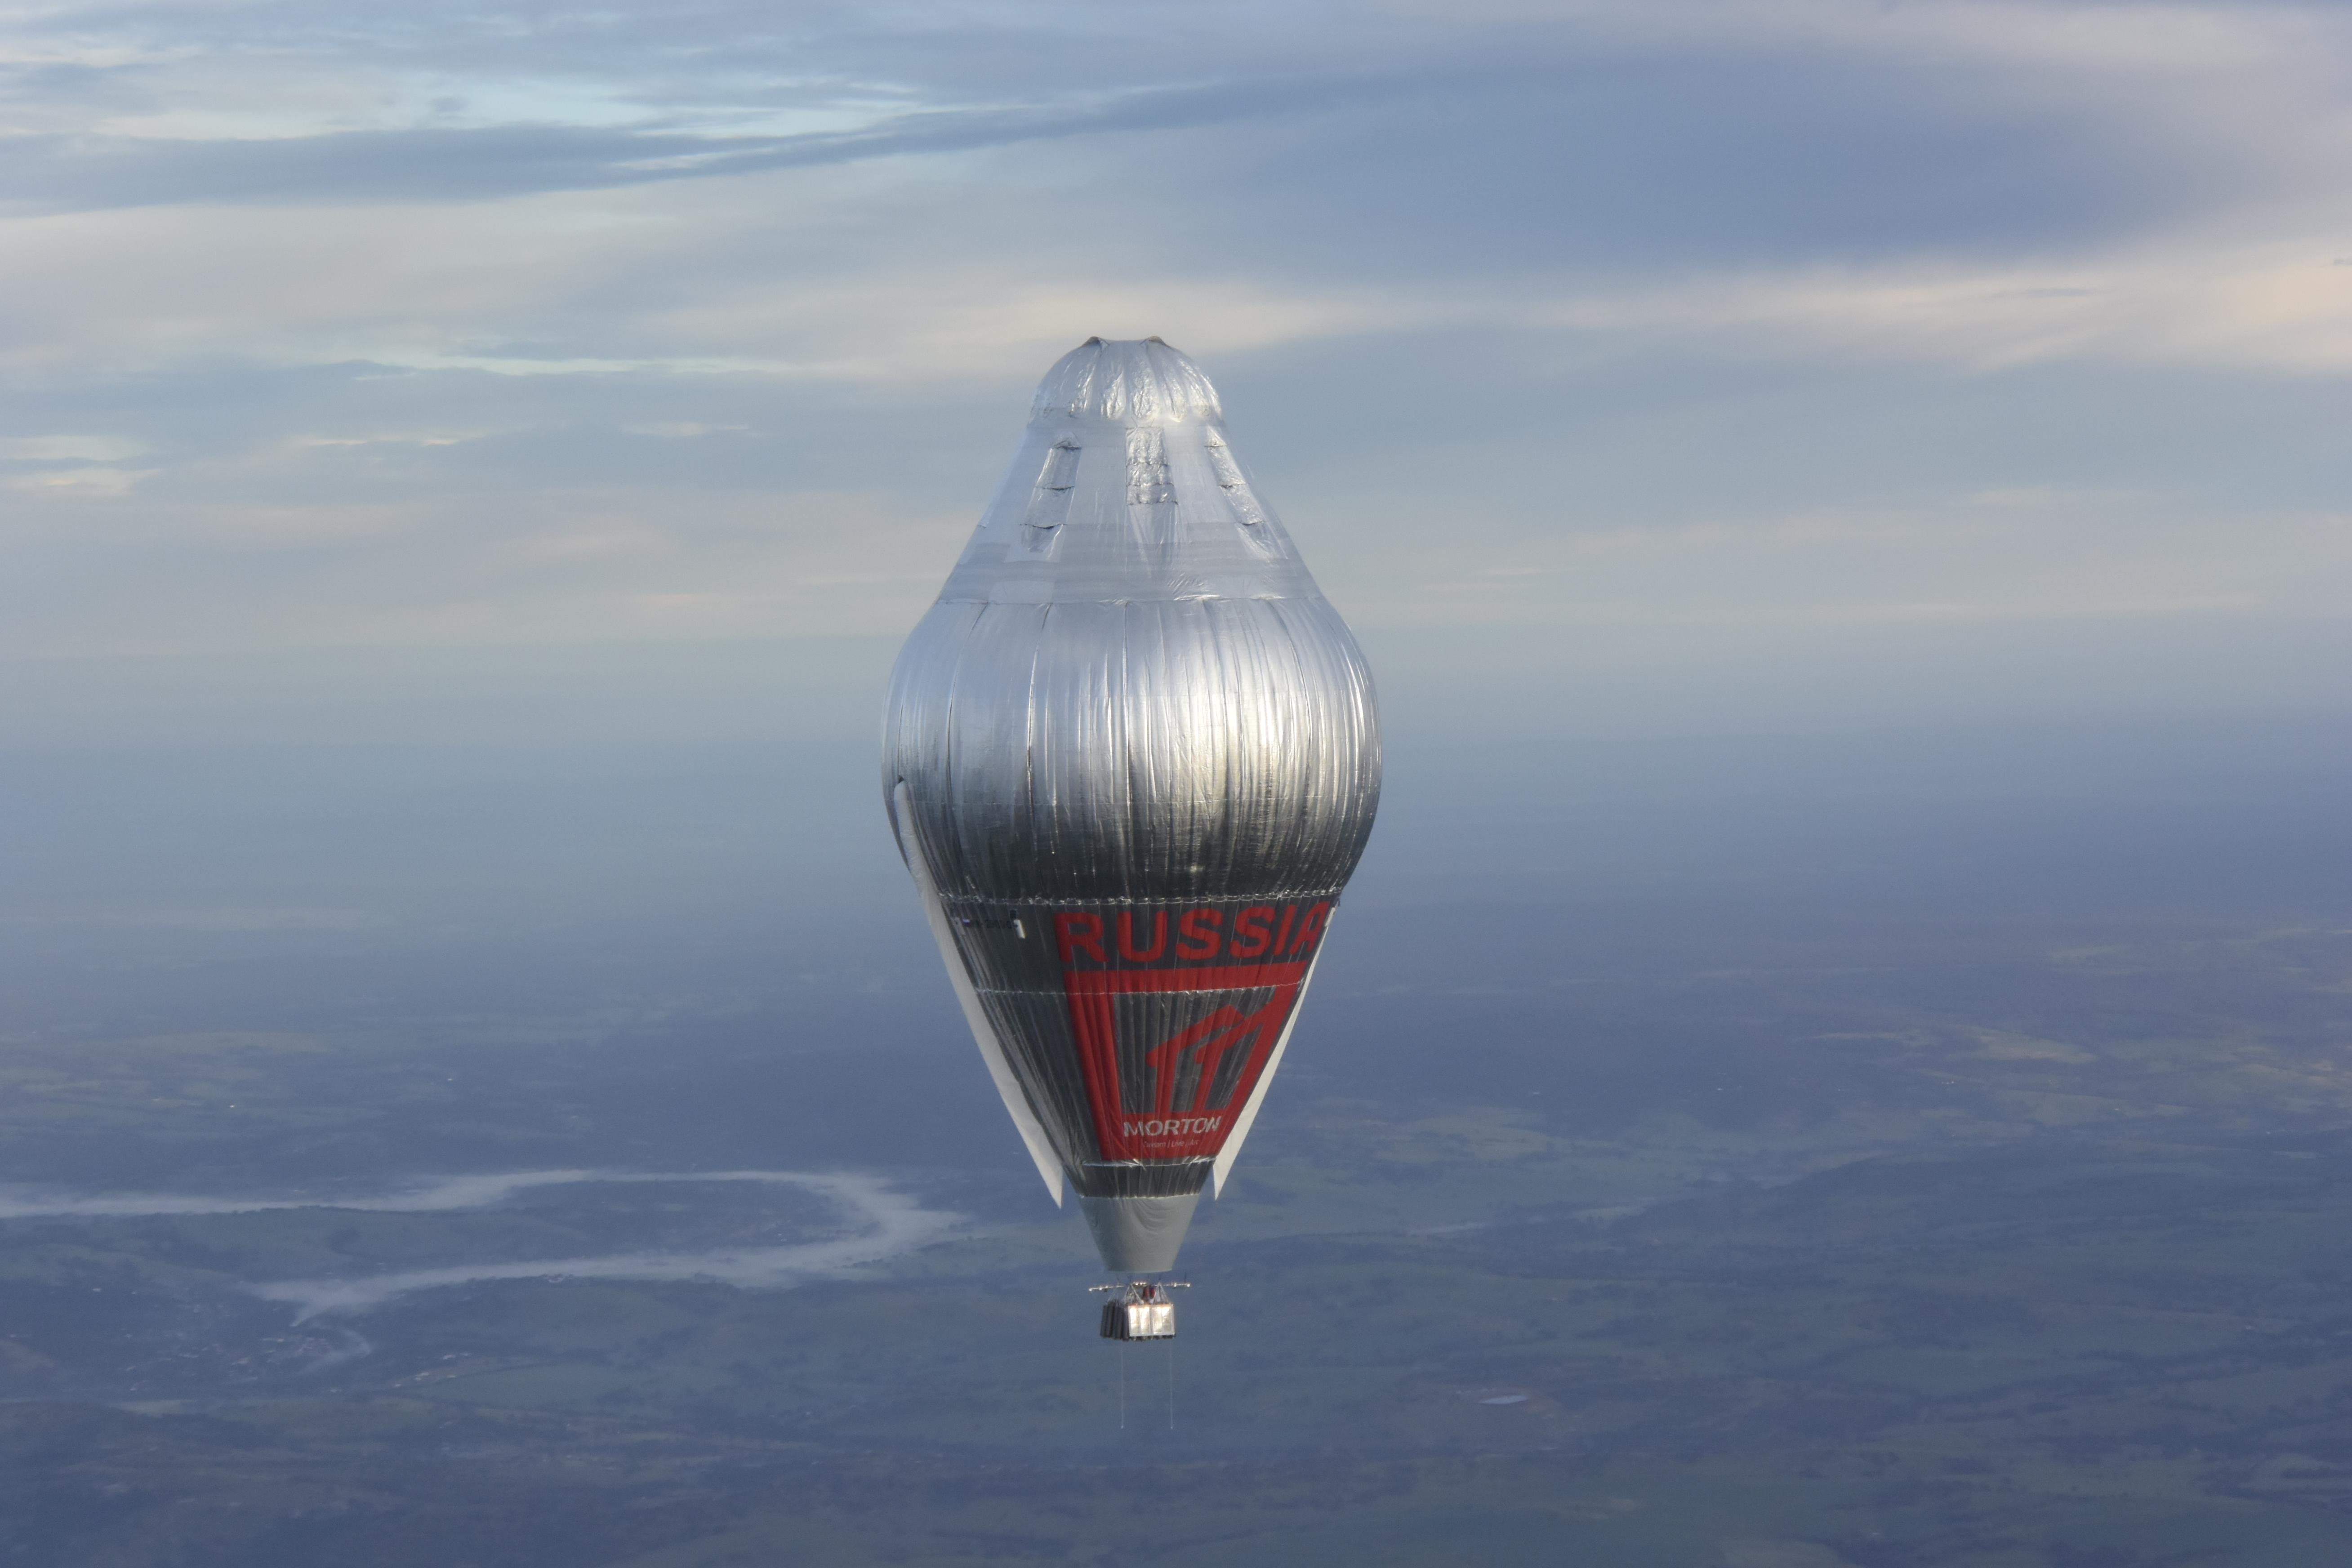 Аэростат объемом 2000 метров. Фёдор Конюхов на воздушном шаре вокруг света.